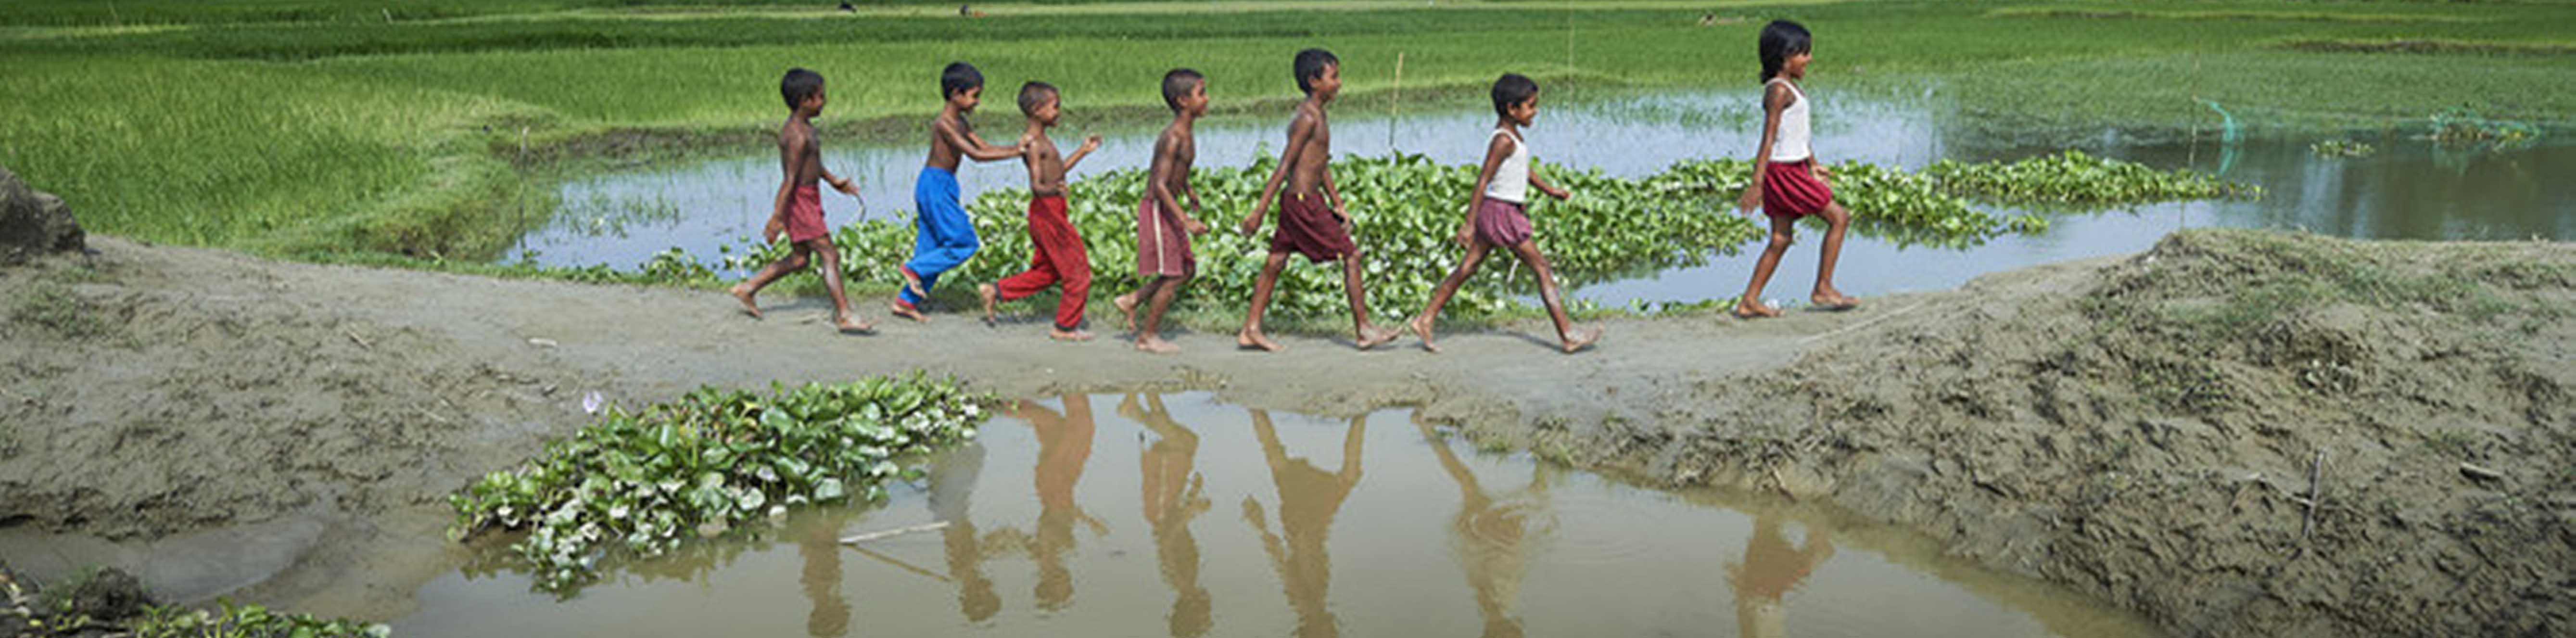 Village Children in Bangladesh